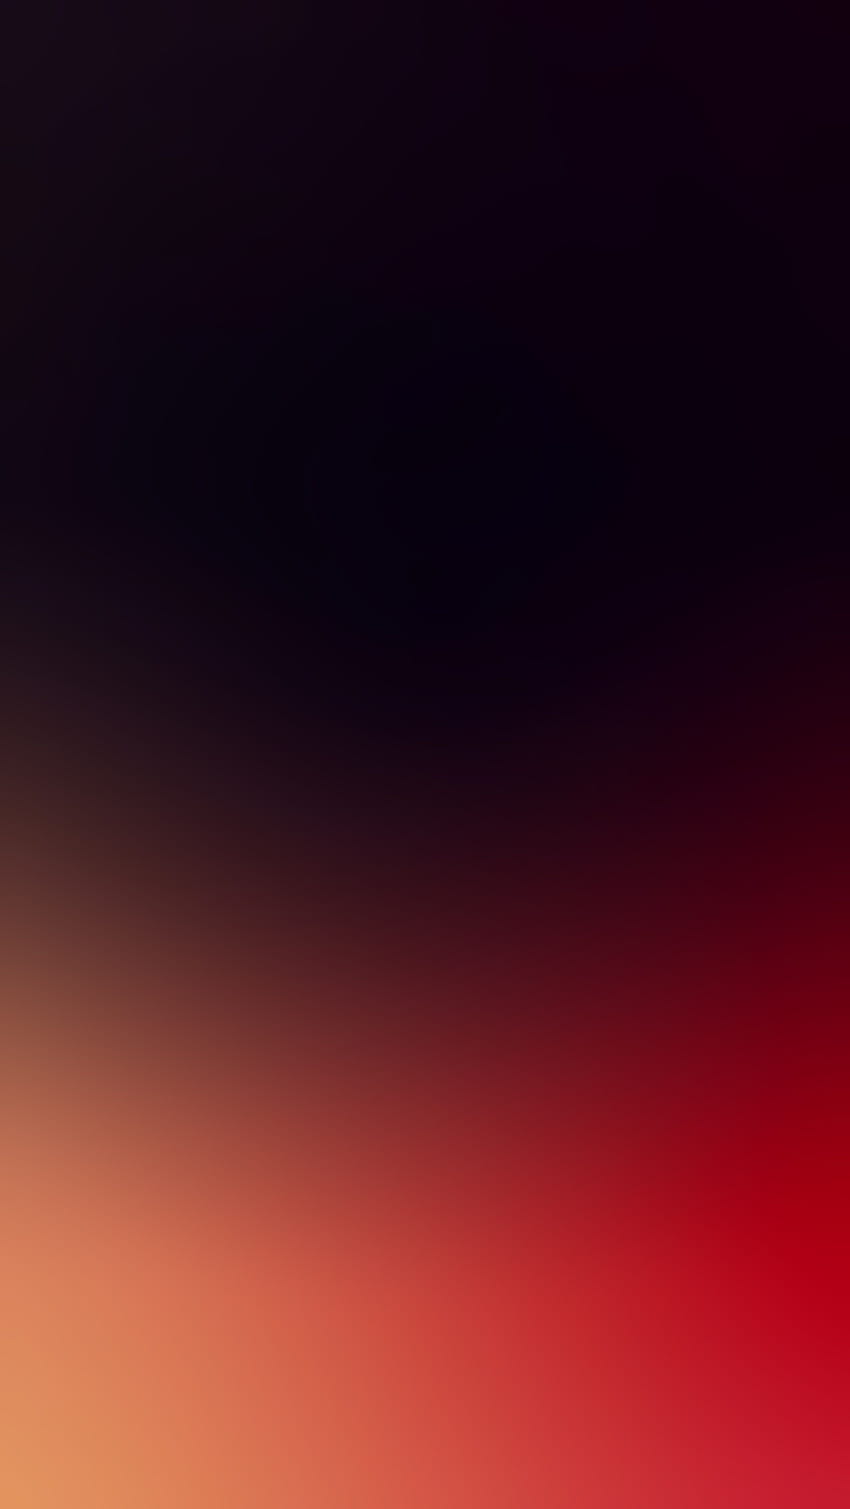 Hier ist meine Version dieses rot-schwarzen Farbverlaufs, der so dunkelrot ist HD-Handy-Hintergrundbild